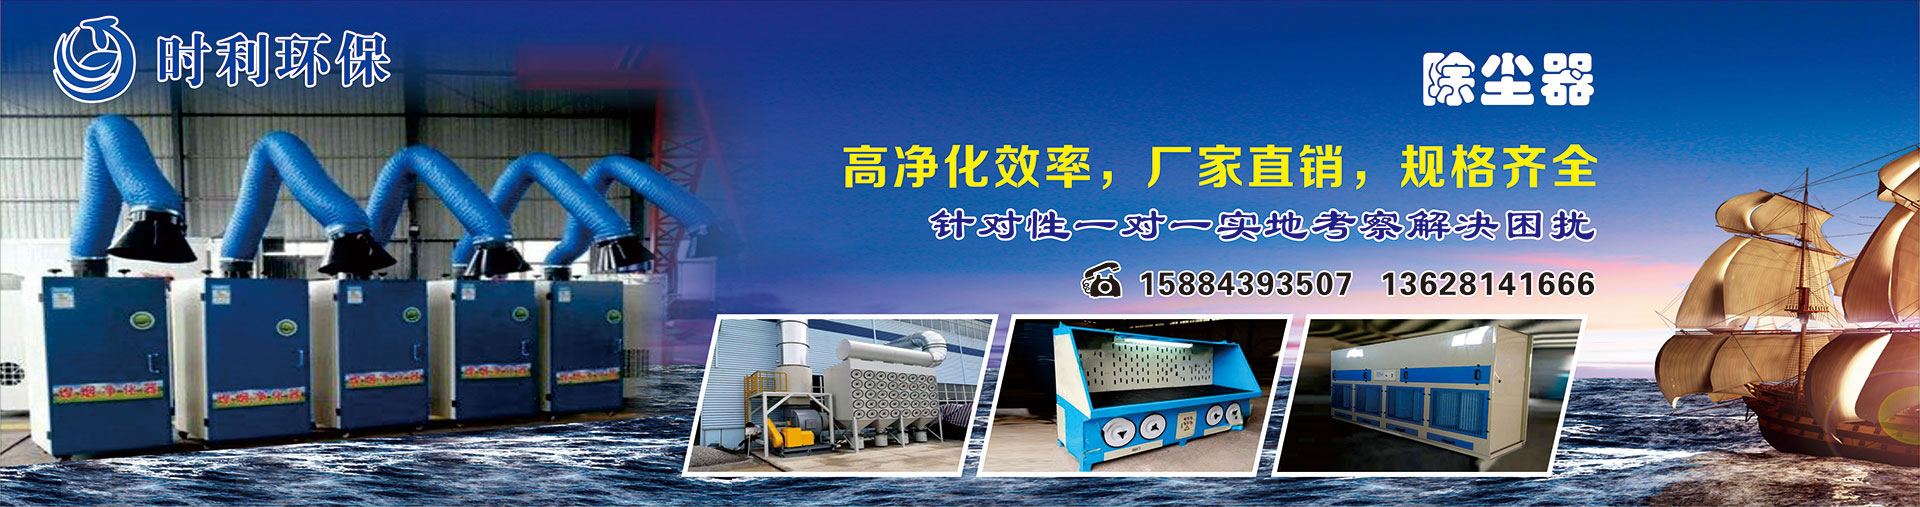 广州市海珠区江华电气控制设备有限公司